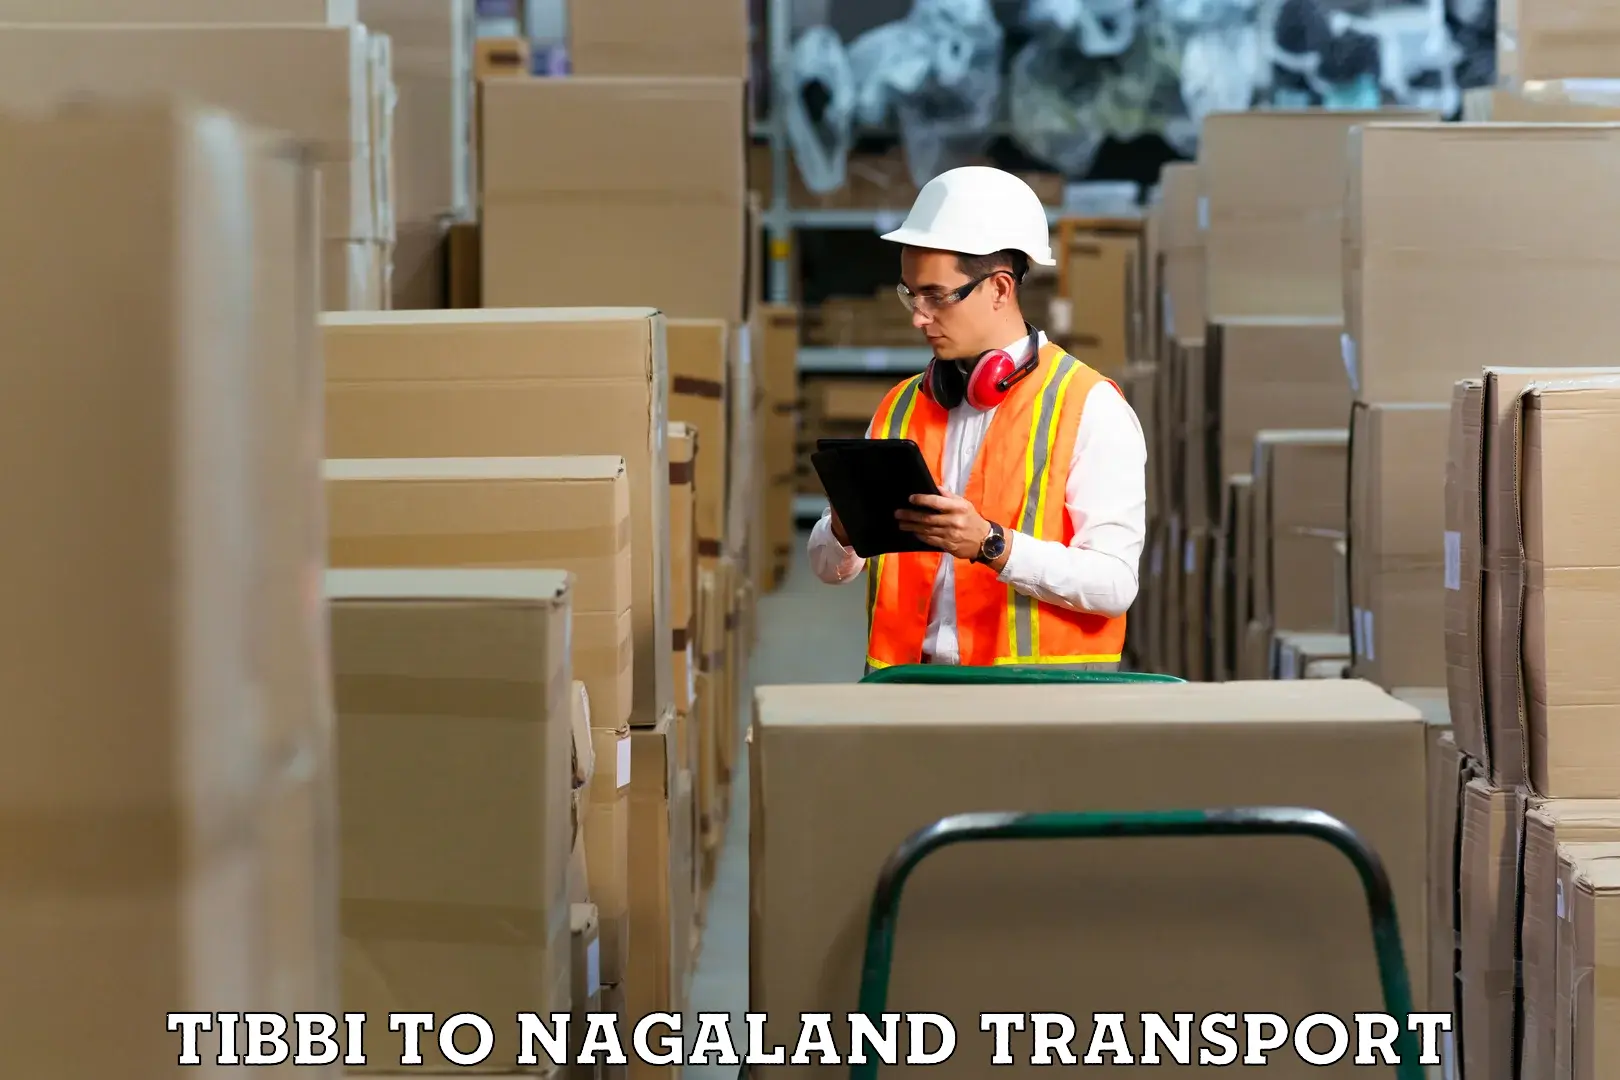 Nearby transport service Tibbi to NIT Nagaland